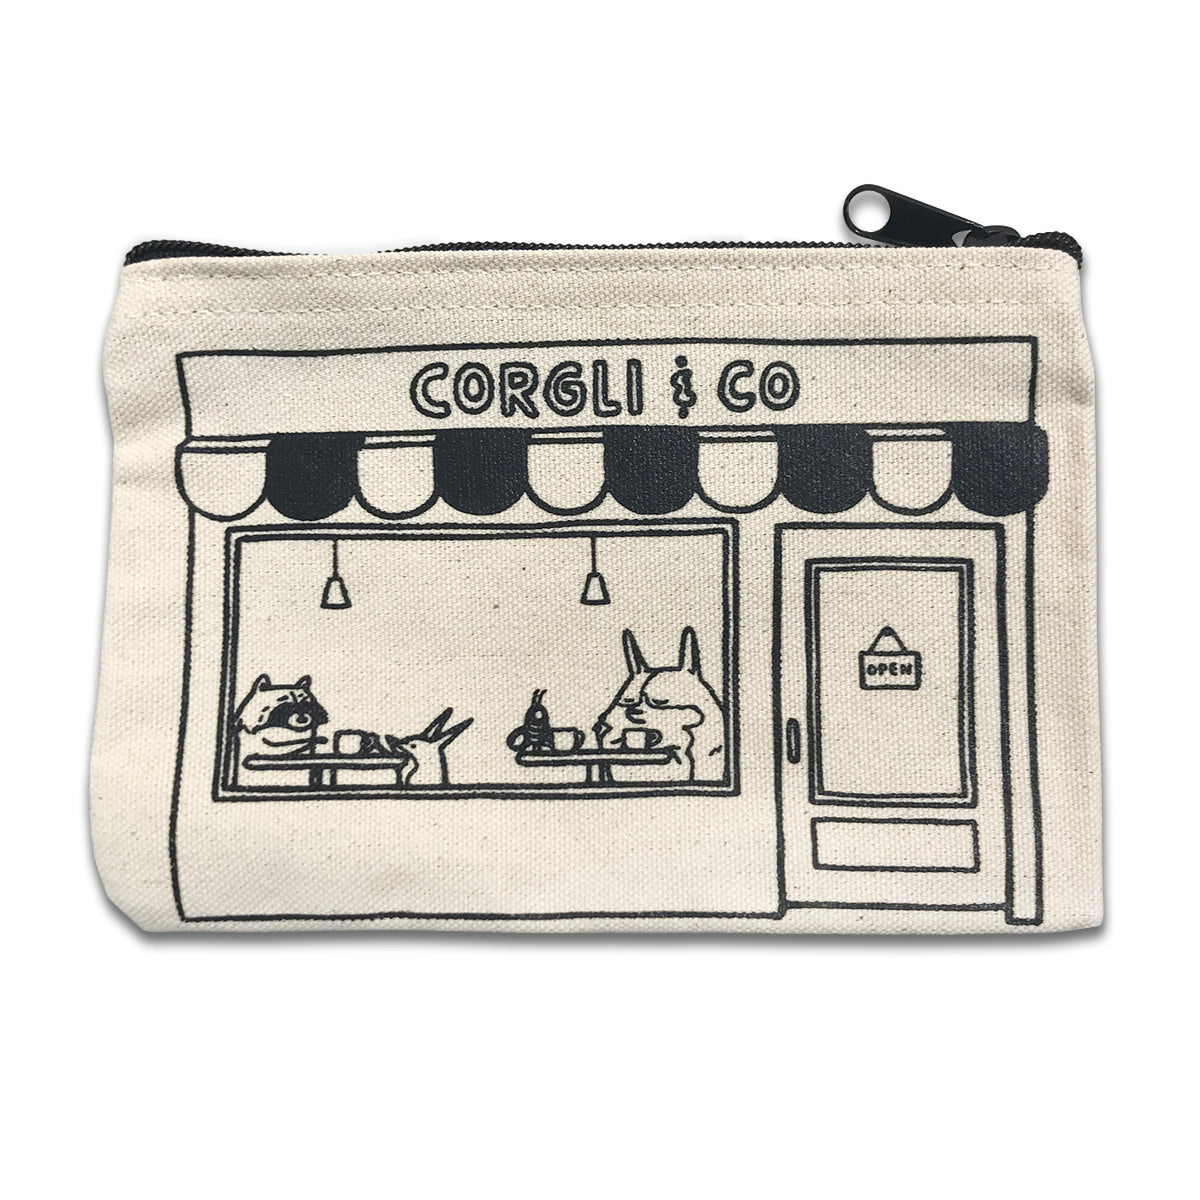 Corgli & Co Cafe zipper pouch.